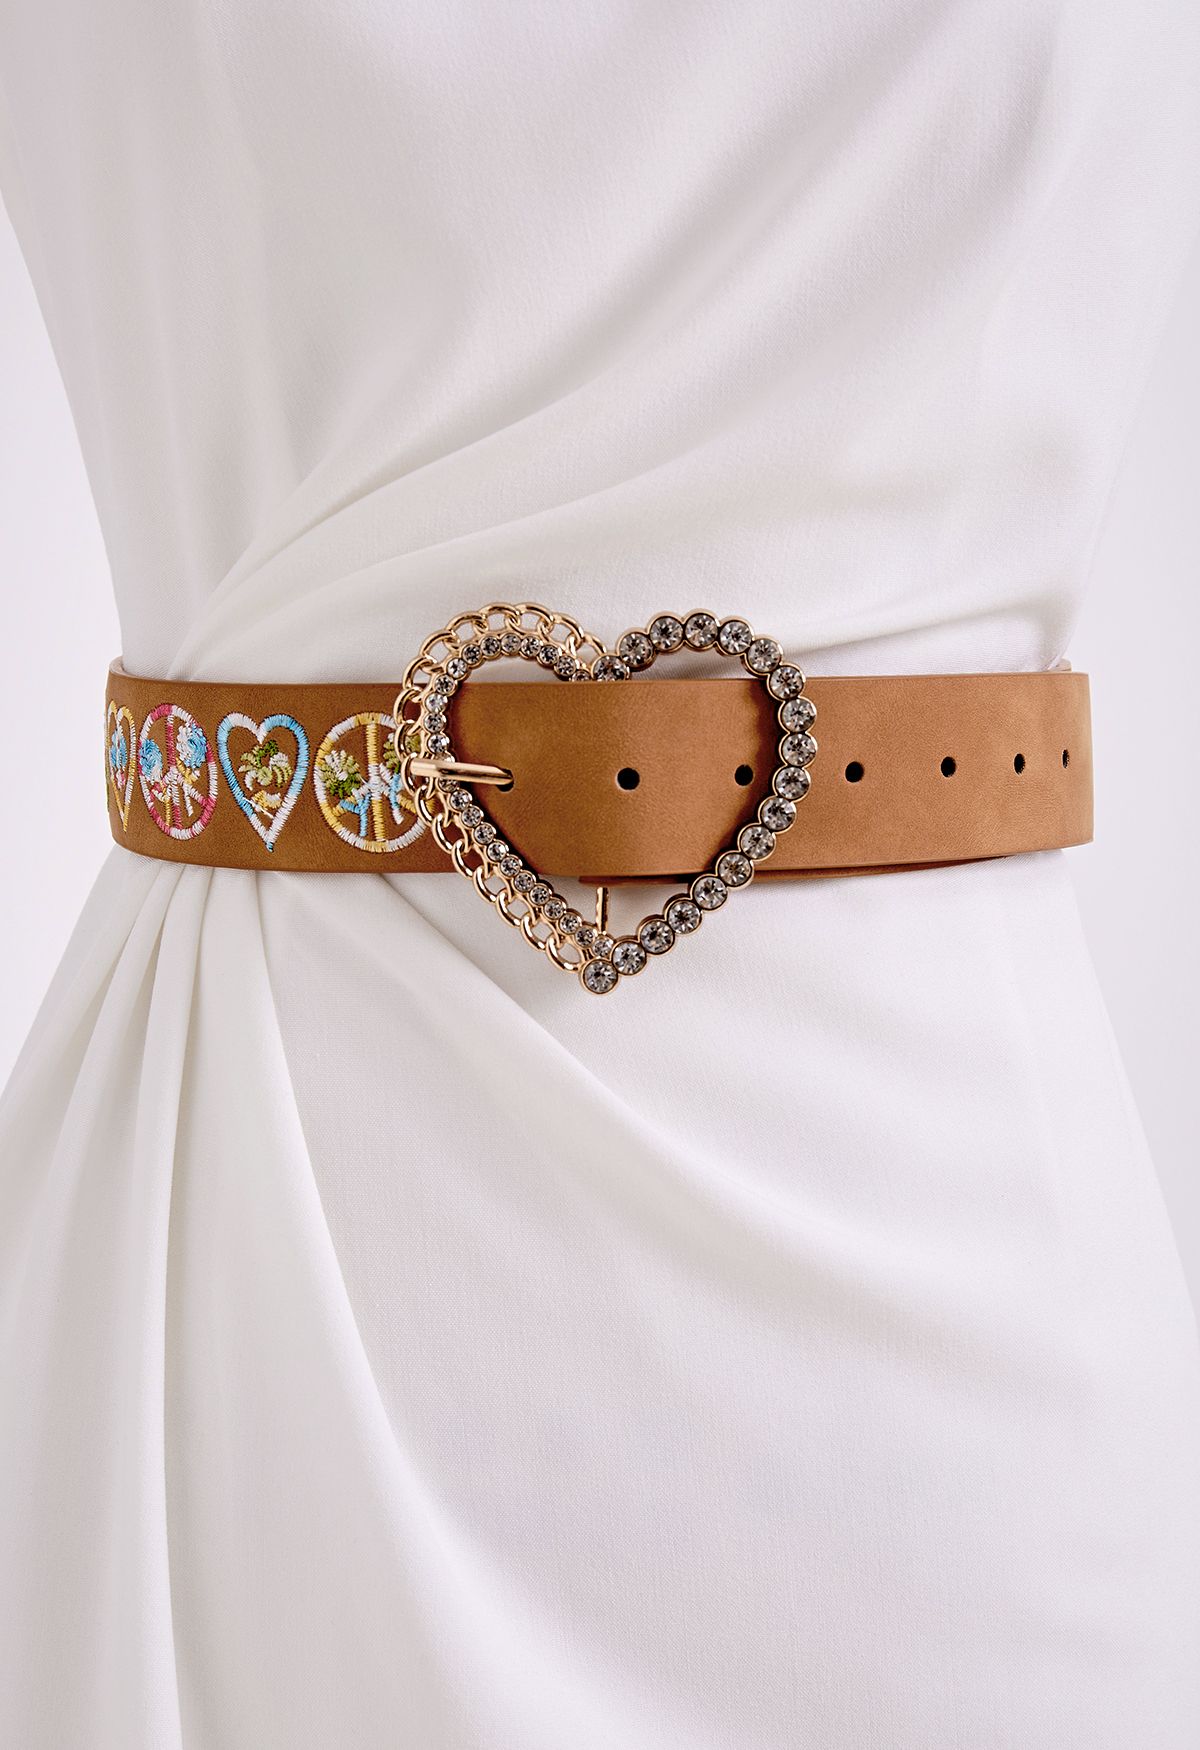 Cinturón bordado floral con corazón de diamantes de imitación